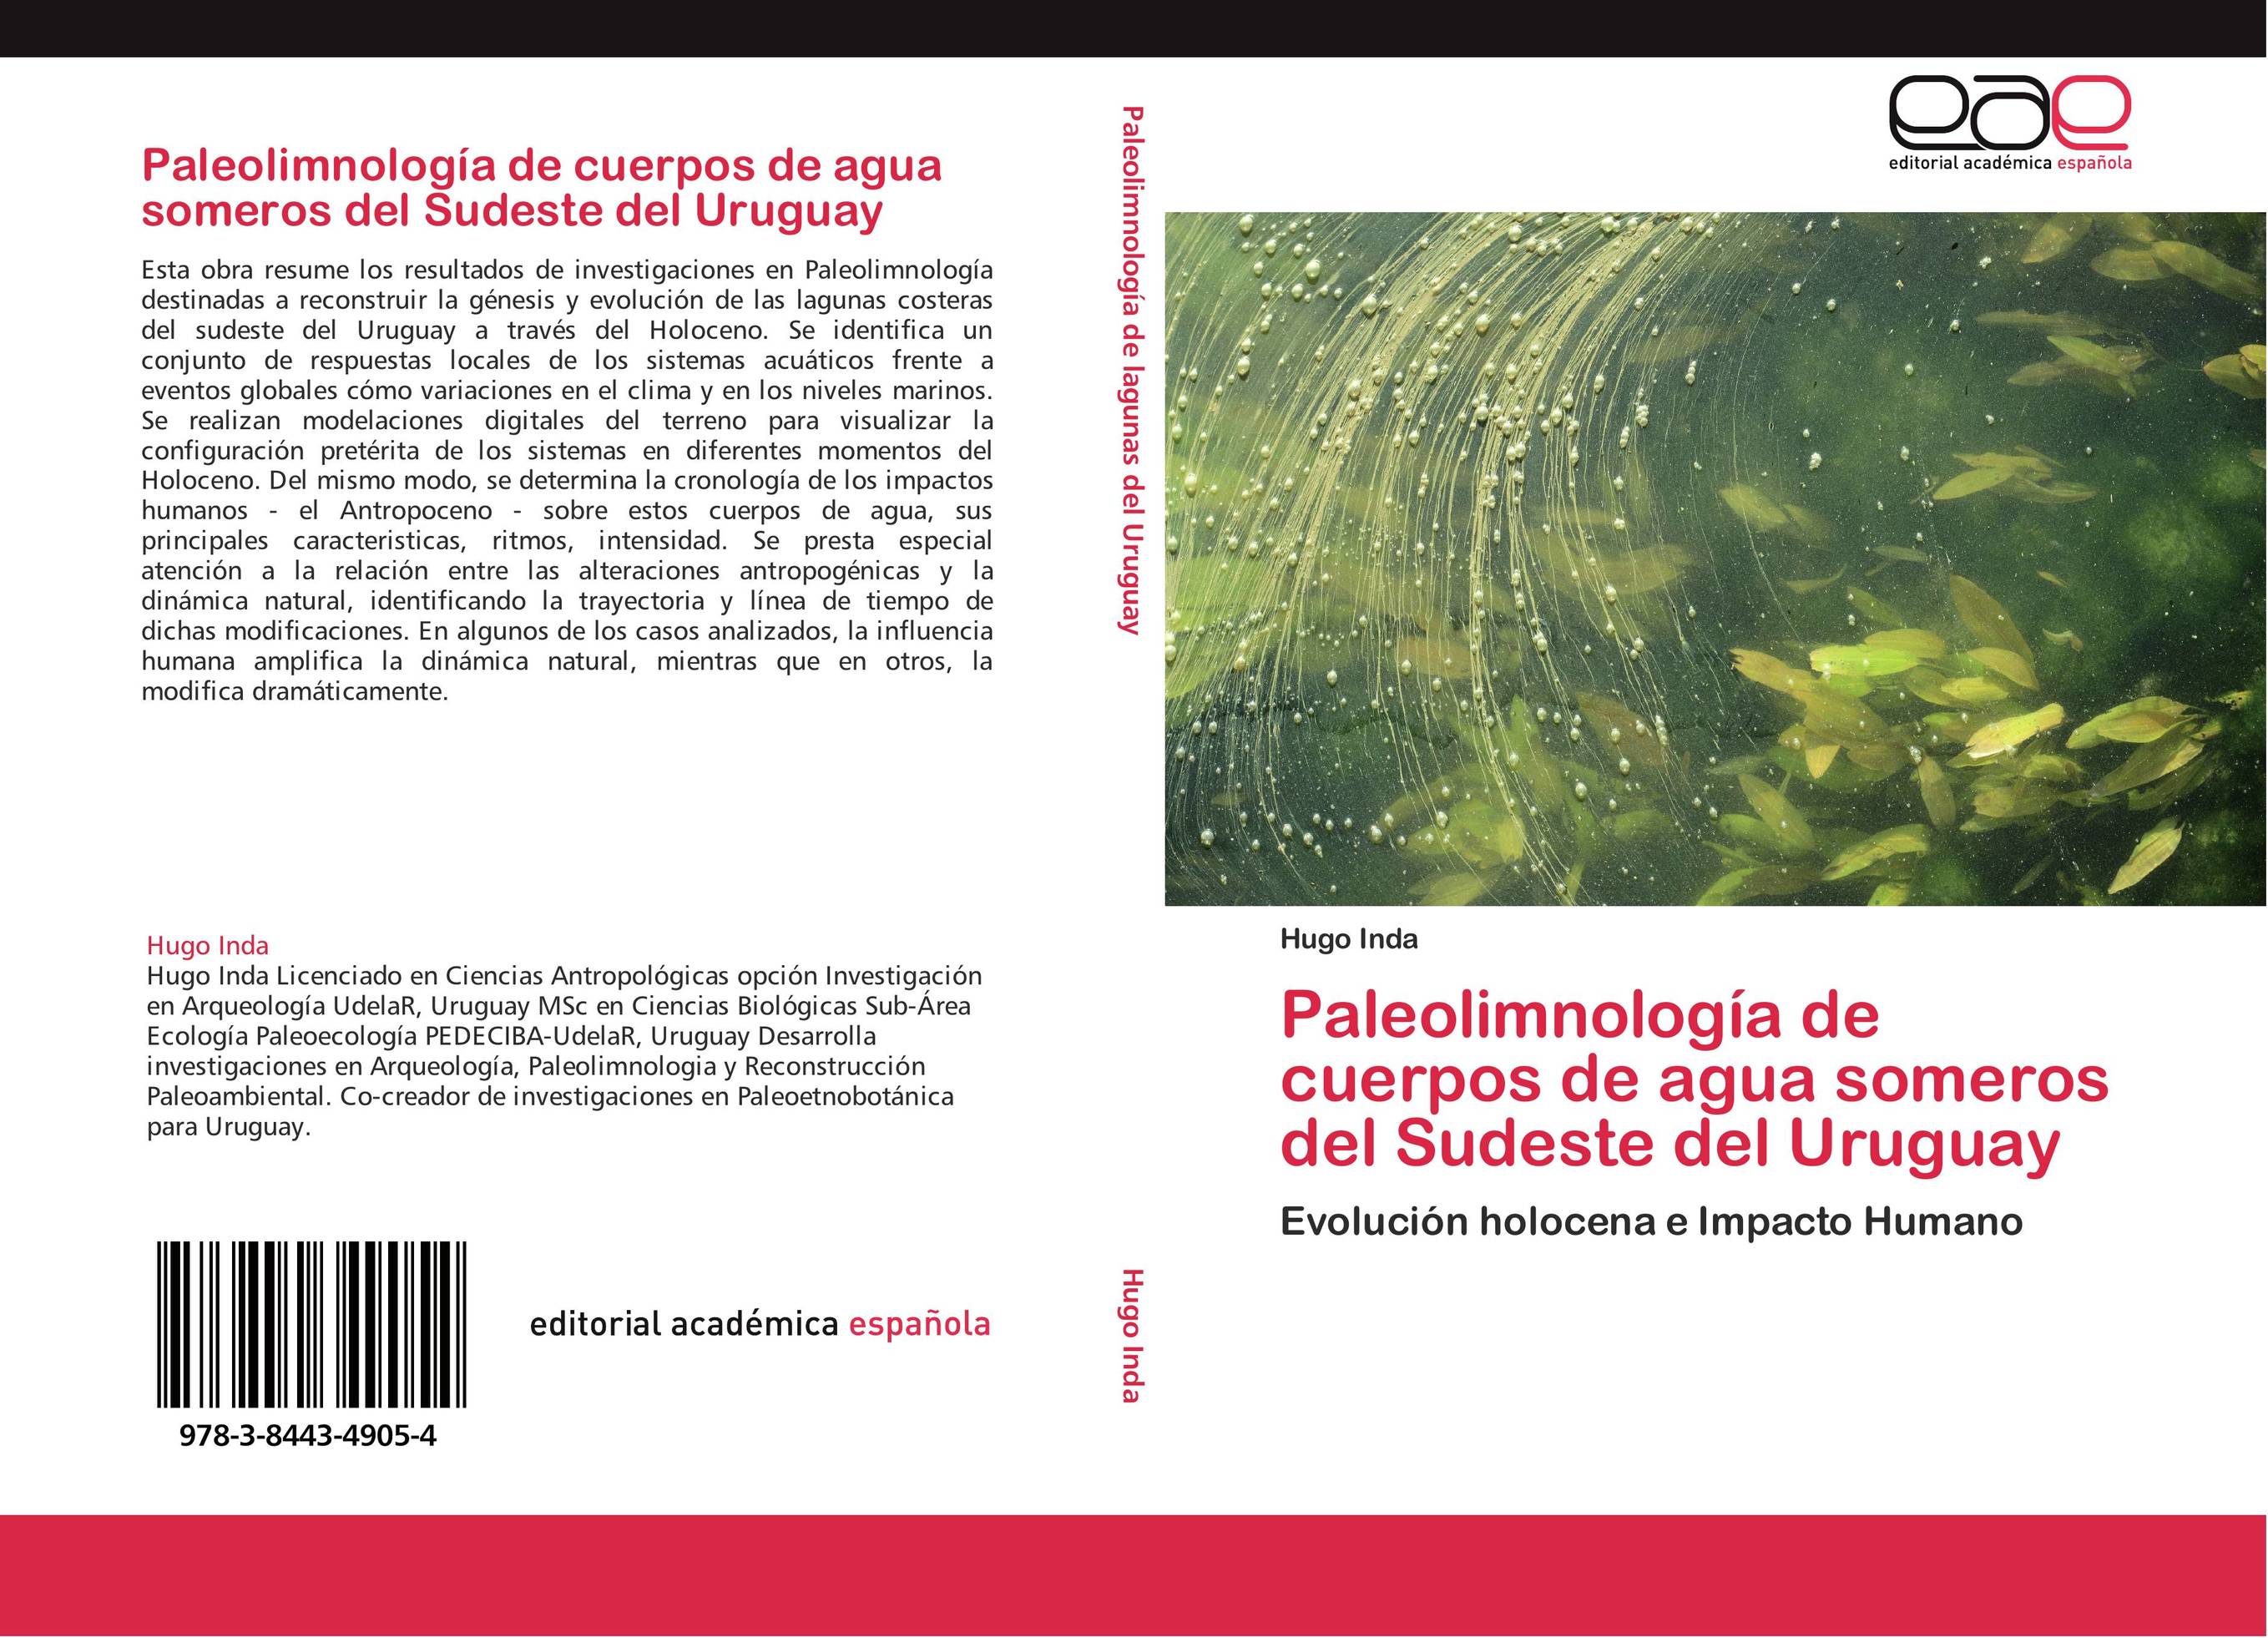 Paleolimnología de cuerpos de agua someros del Sudeste del Uruguay